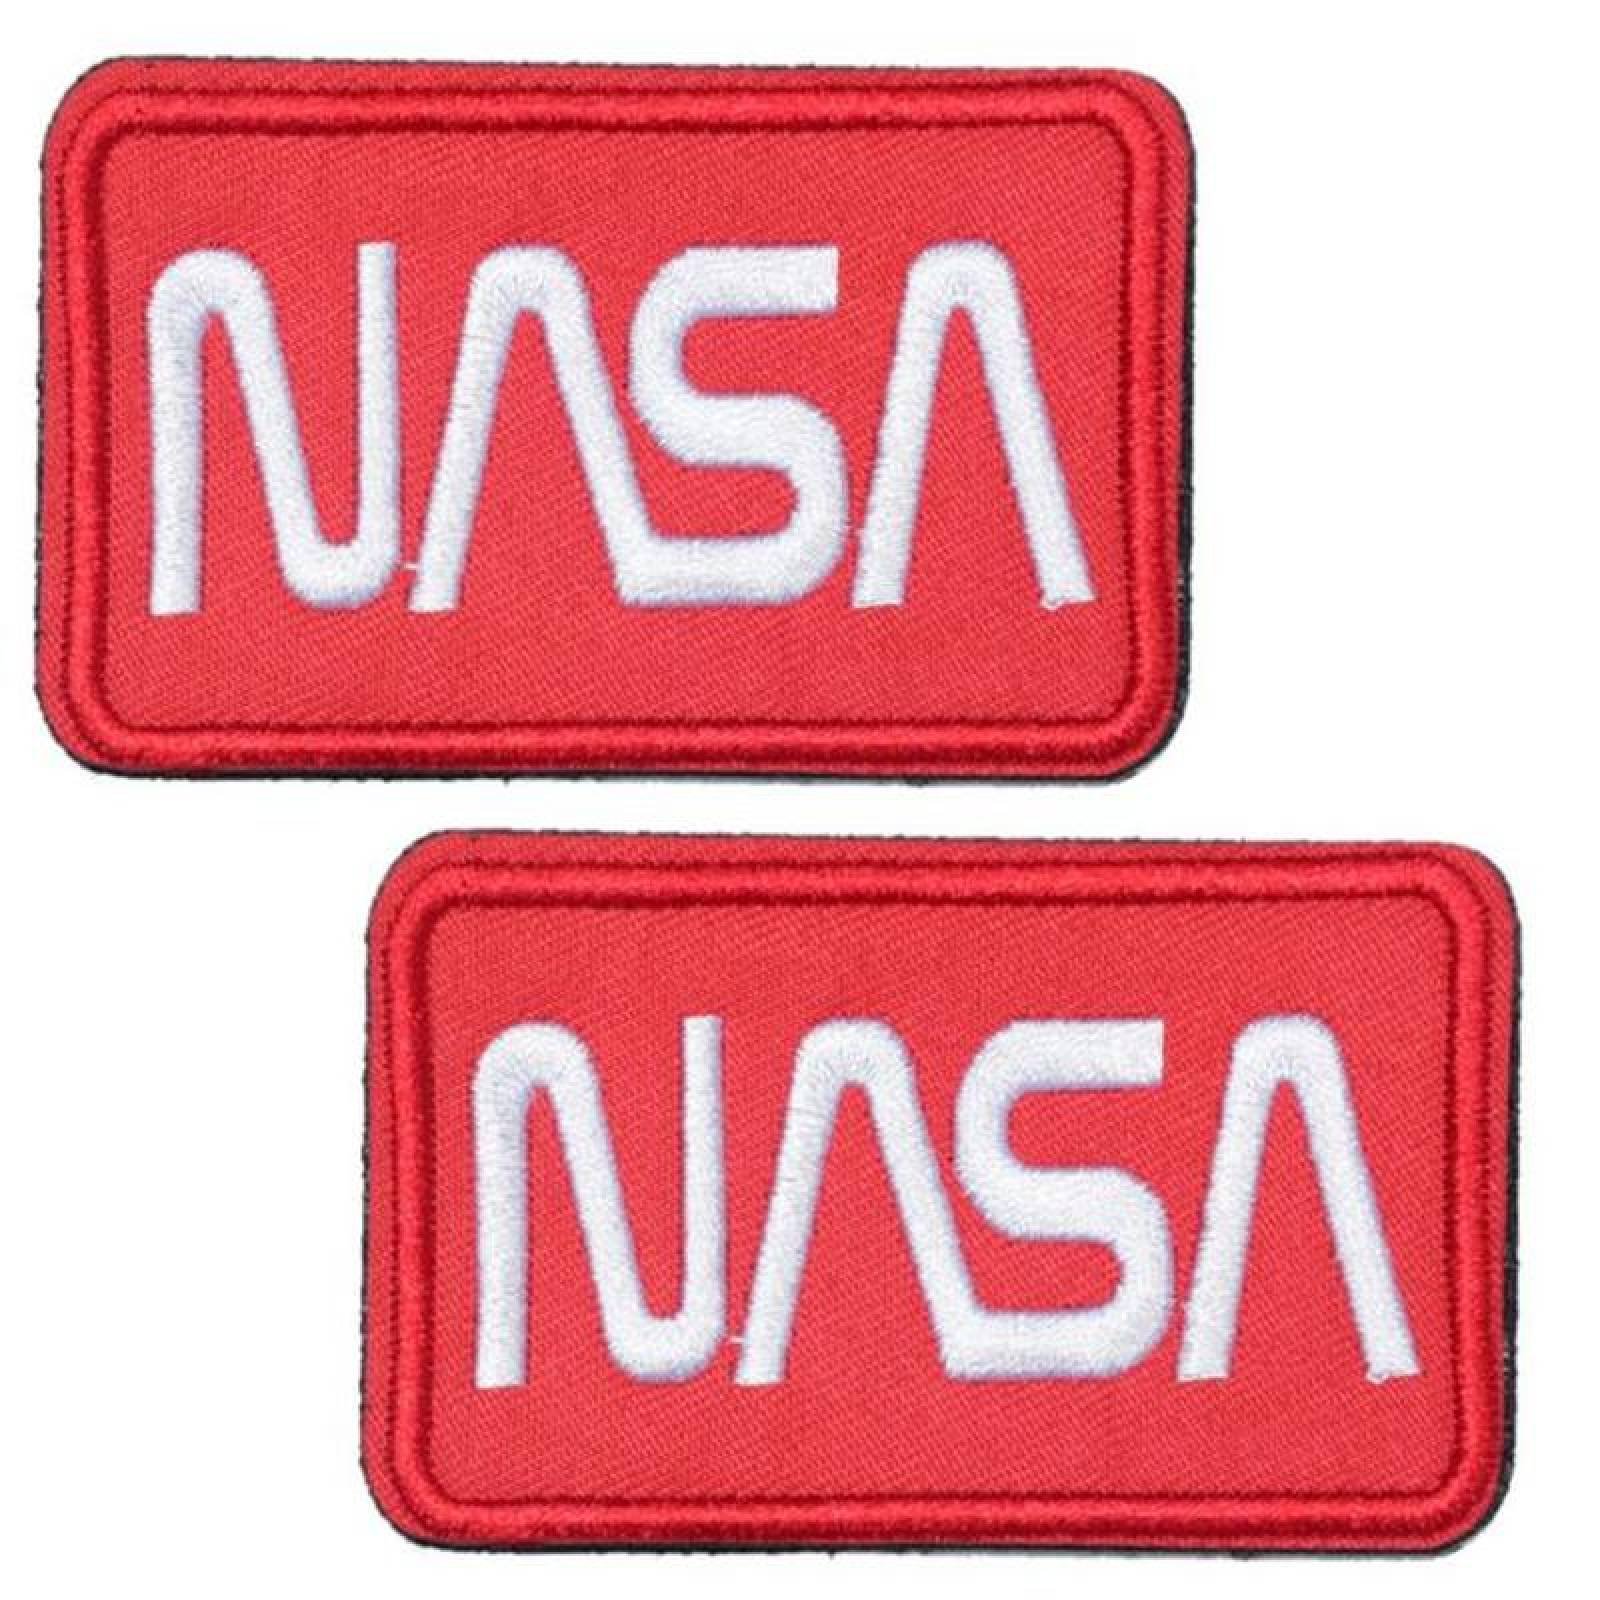 Parche de la NASA Blanco MXNAA-002-2 2 Parches Nasa 9,1x4,1cm Rojo Blanco